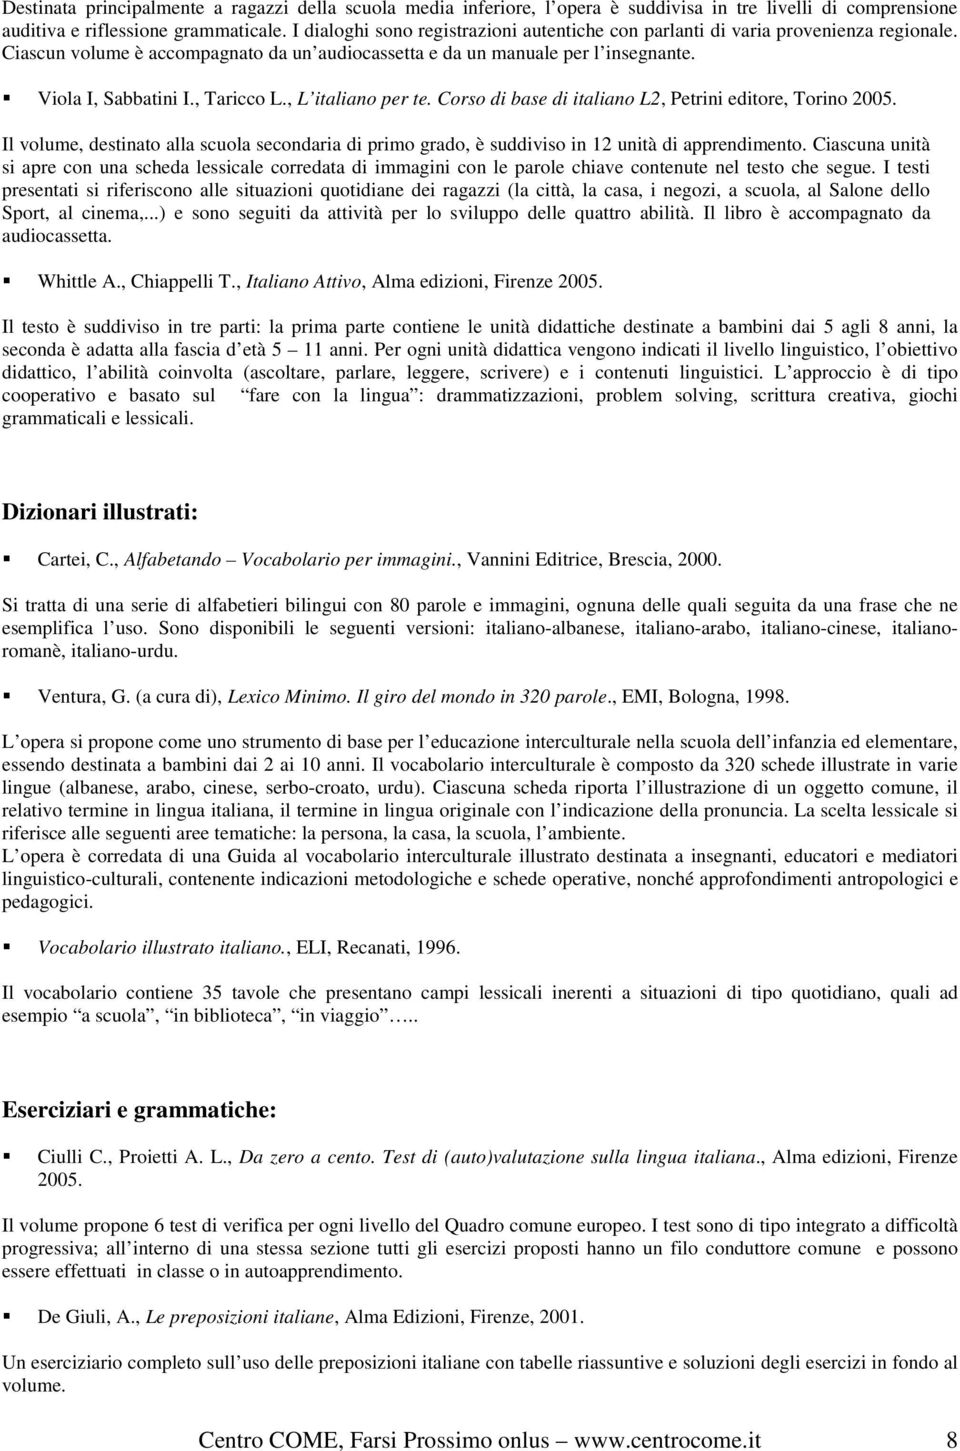 , Taricco L., L italiano per te. Corso di base di italiano L2, Petrini editore, Torino 2005. Il volume, destinato alla scuola secondaria di primo grado, è suddiviso in 12 unità di apprendimento.